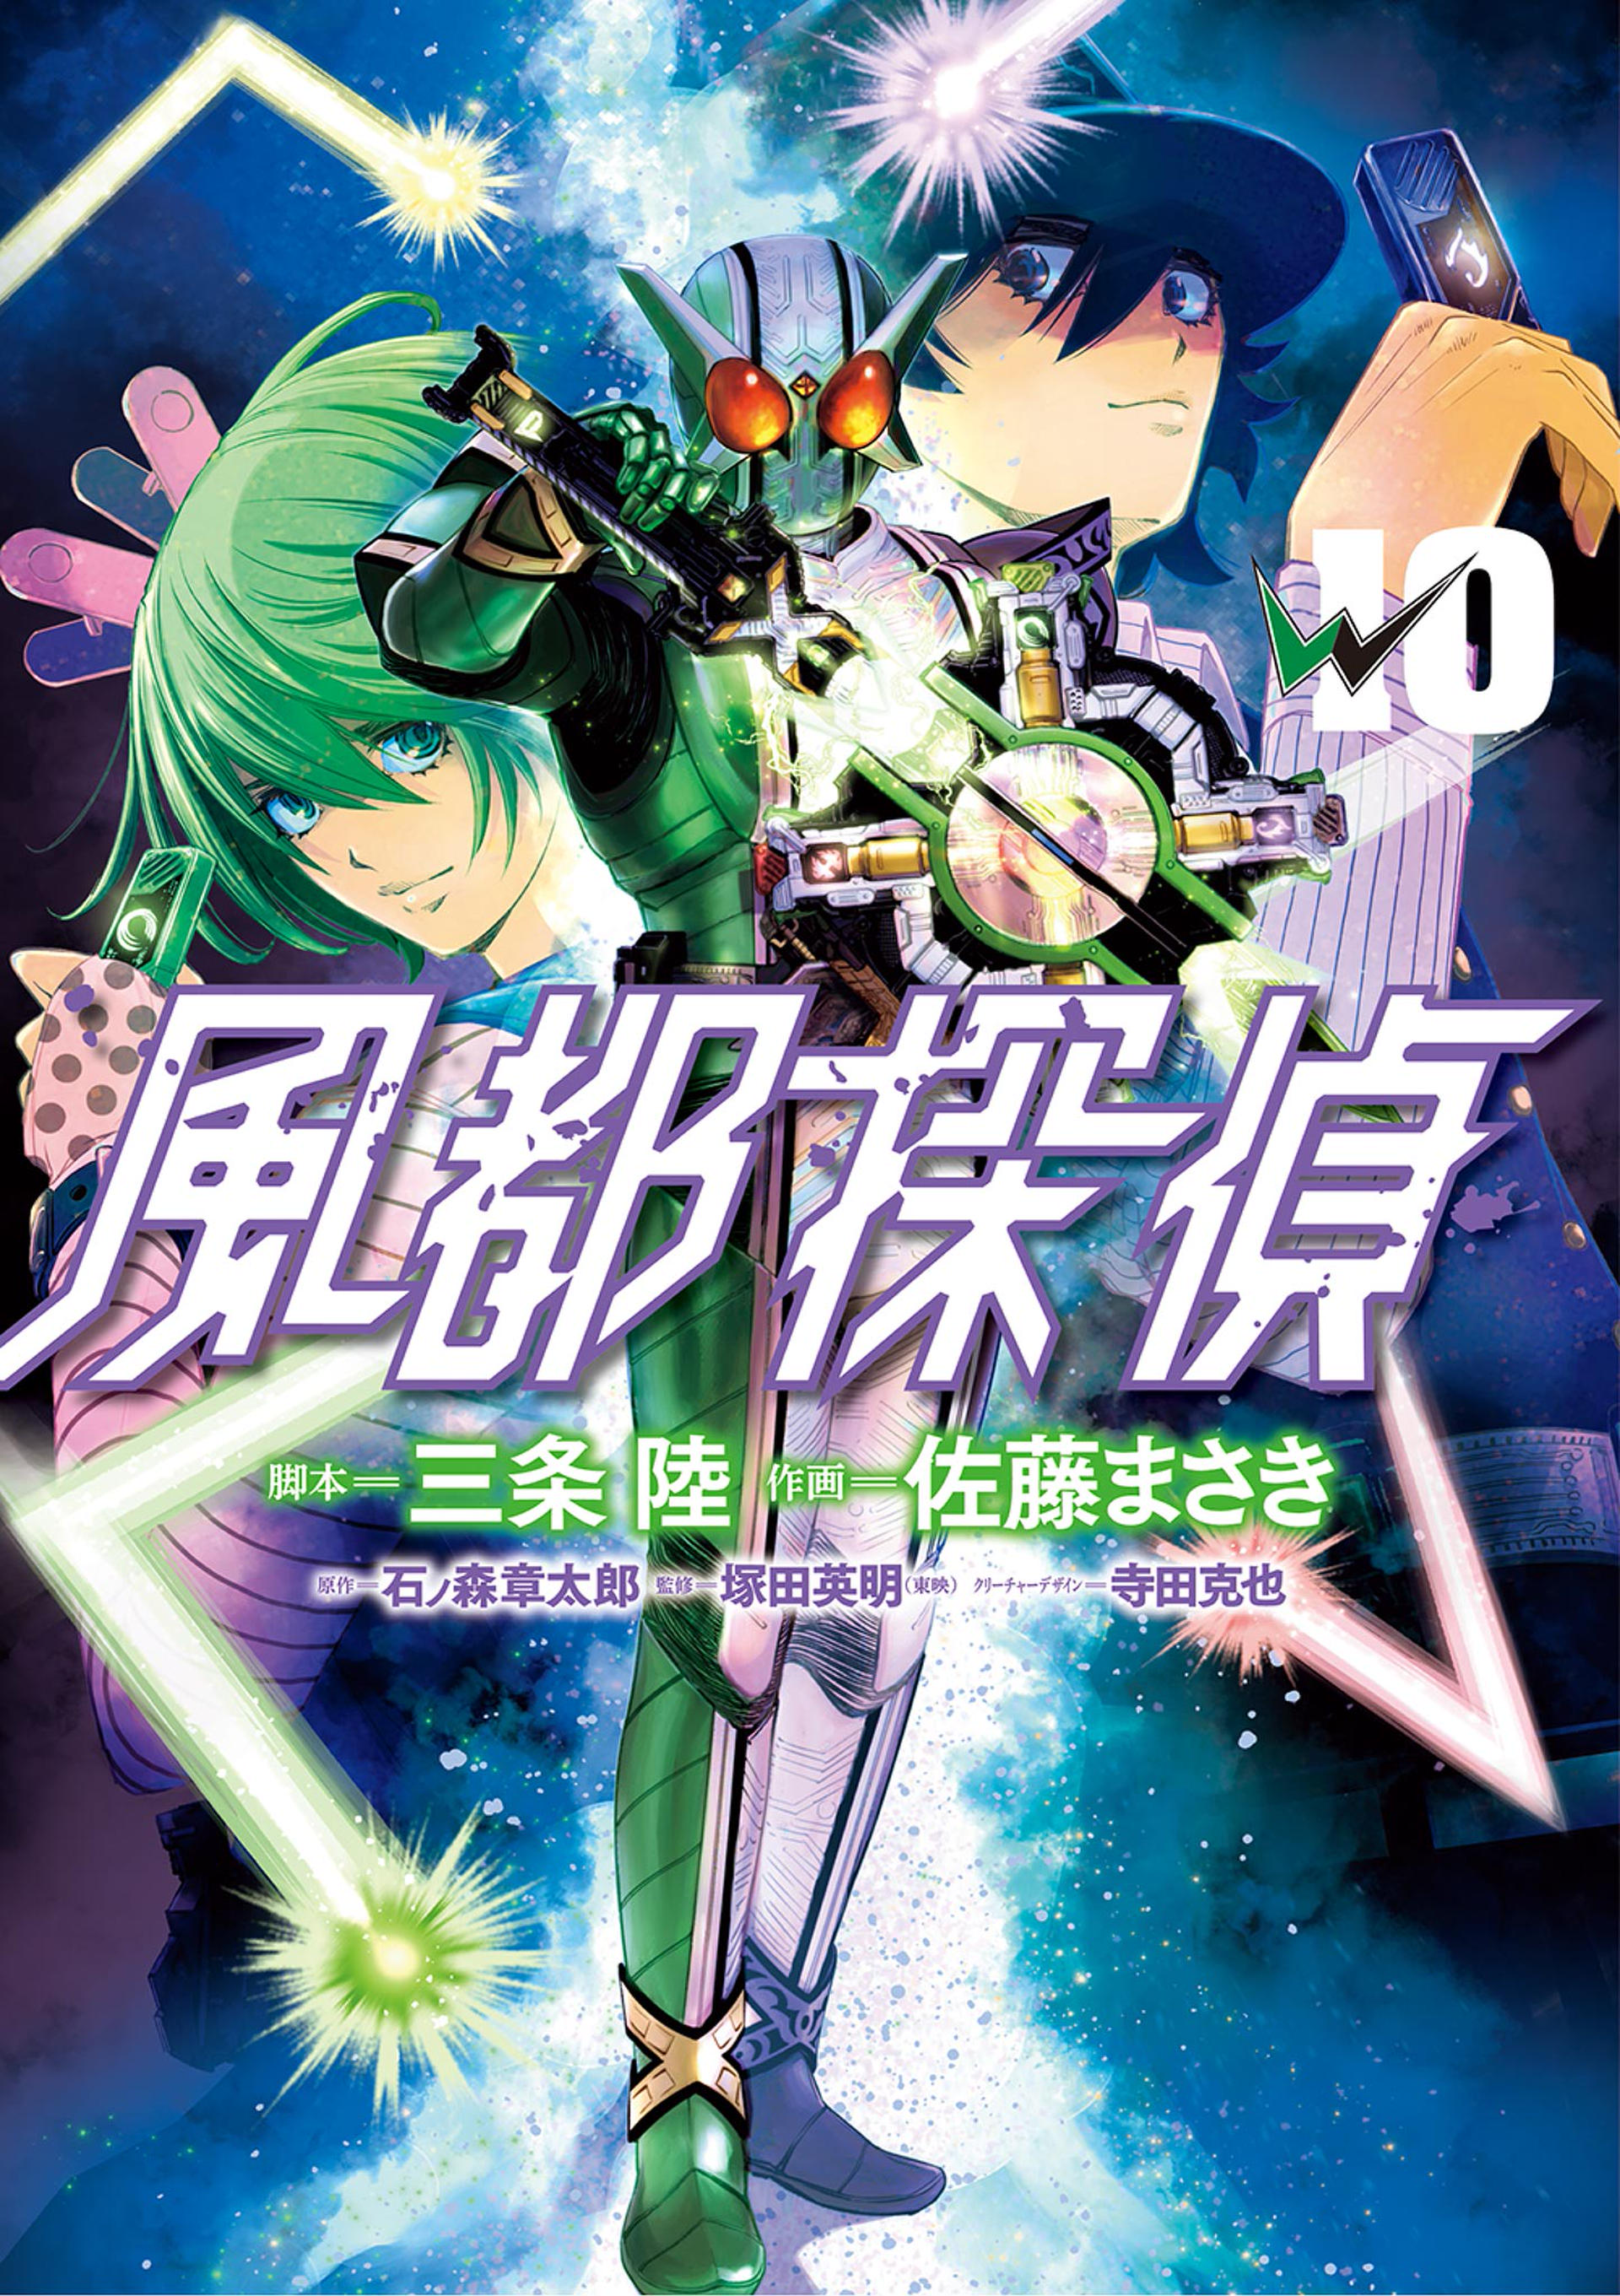 Kamen Rider W - Futo PI cover 6